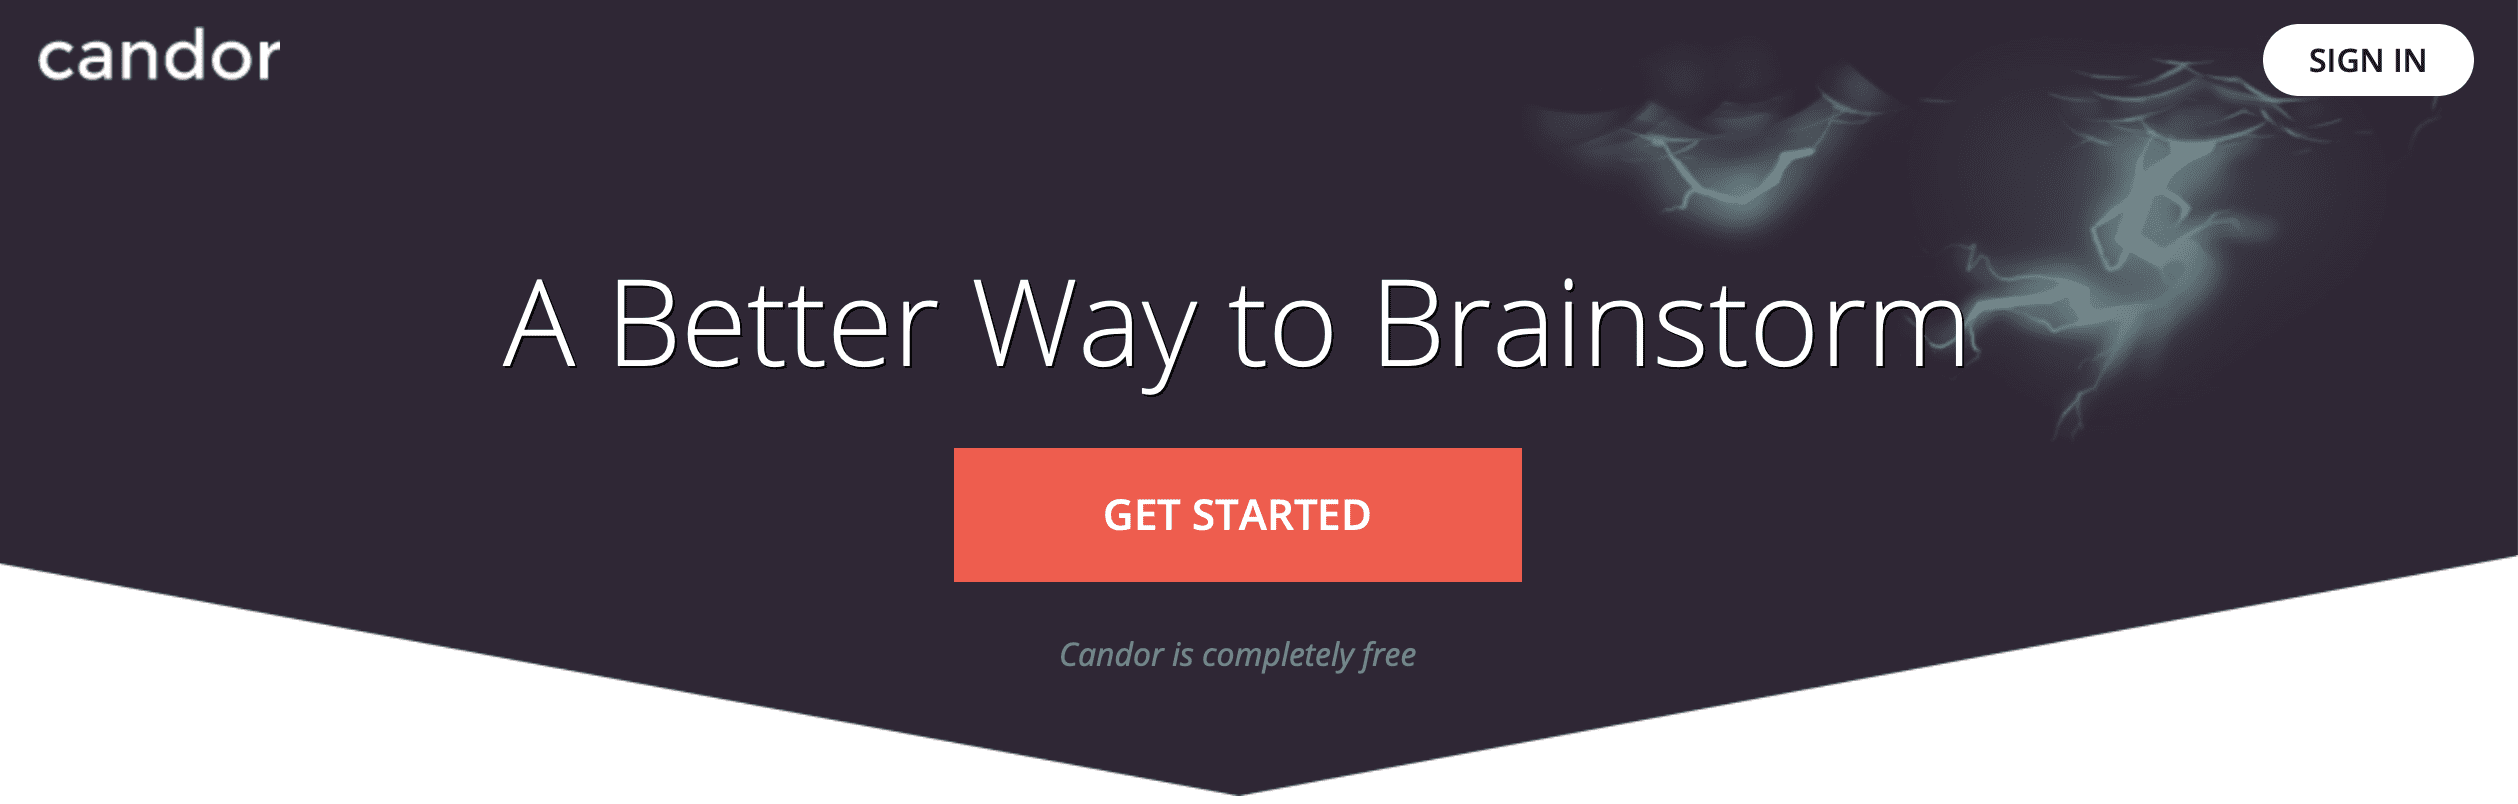 Free brainstorming tool